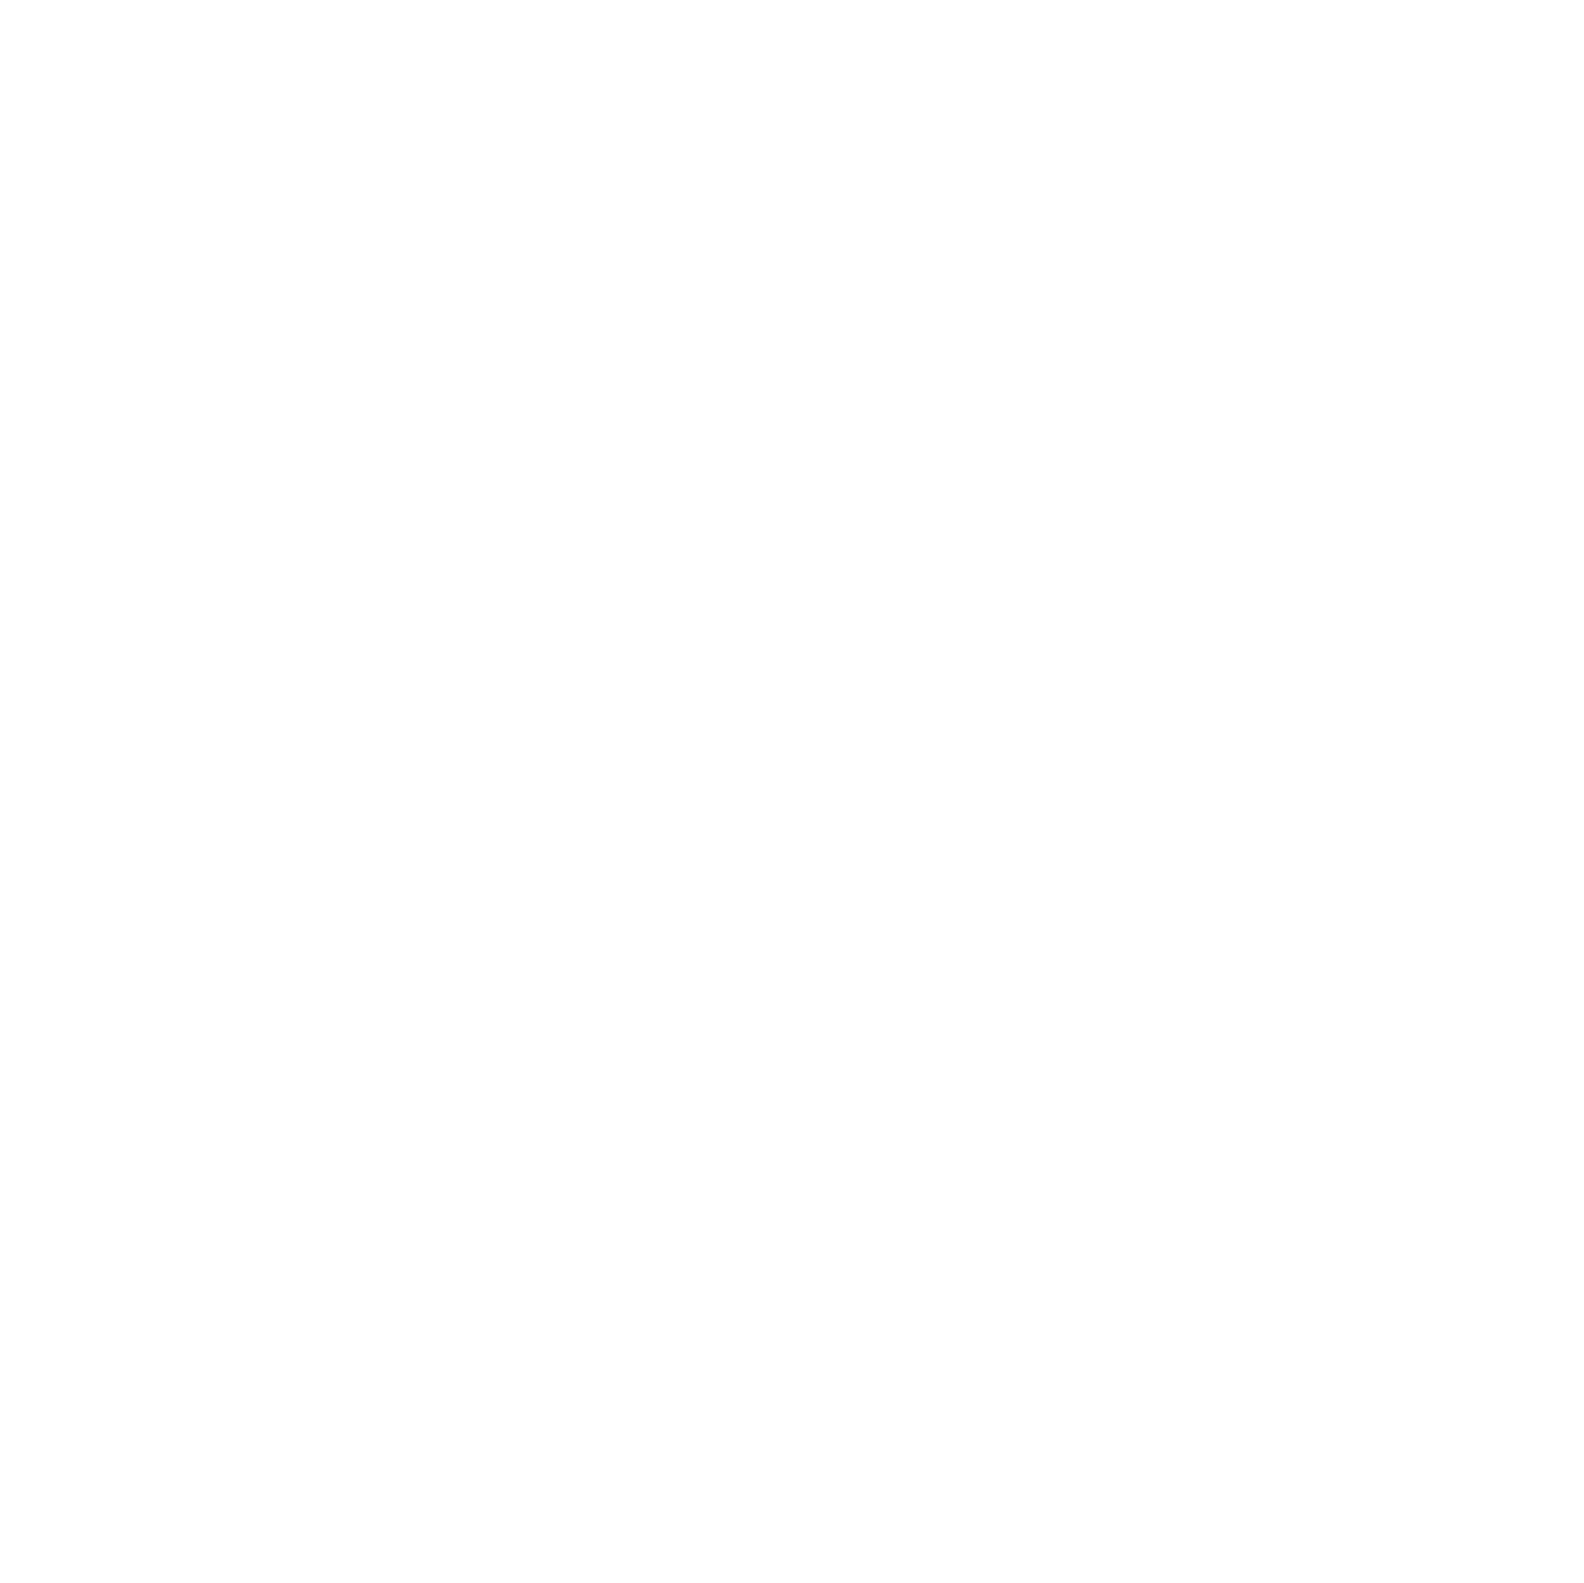 Colruyt logo for dark backgrounds (transparent PNG)